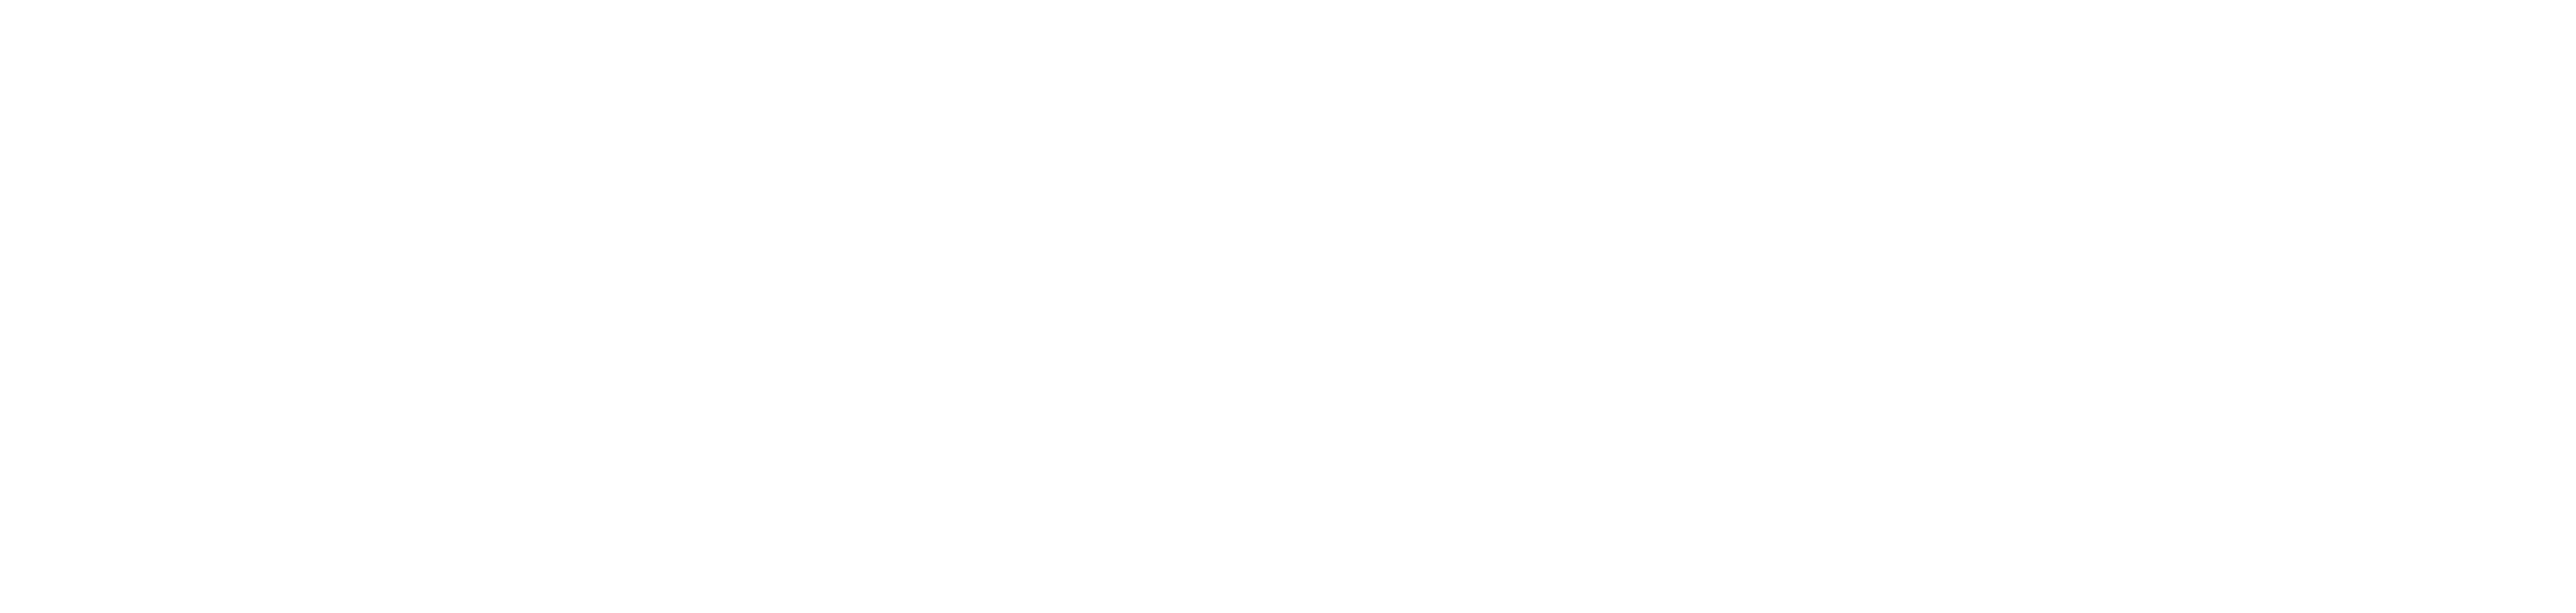 참사원 대동사회 (리좀) 로고.png